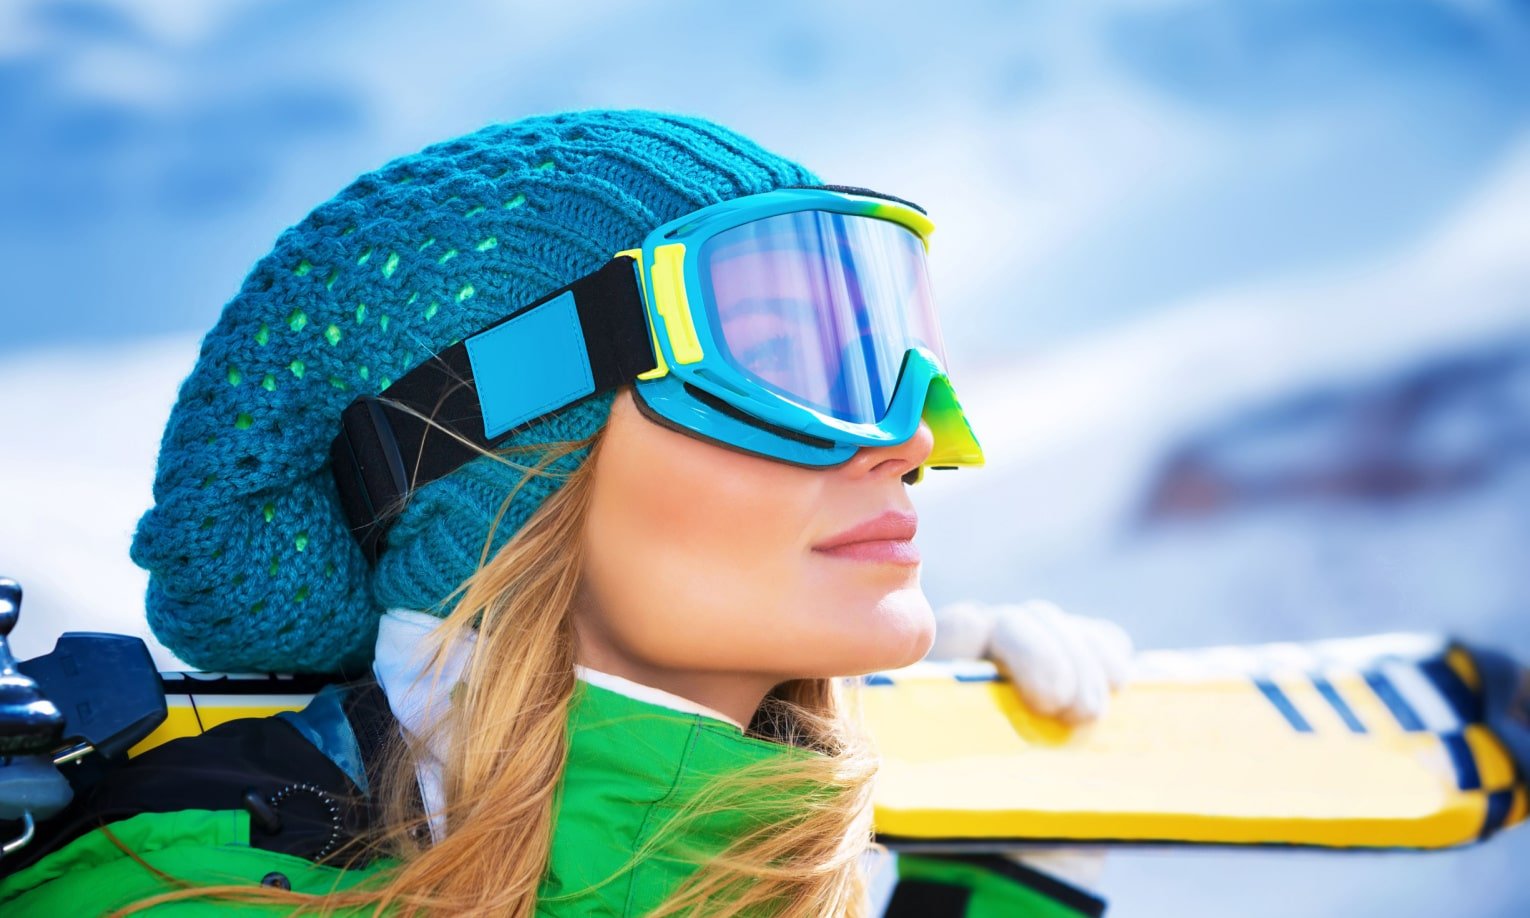 девушка в горнолыжных очках с лыжами на плече